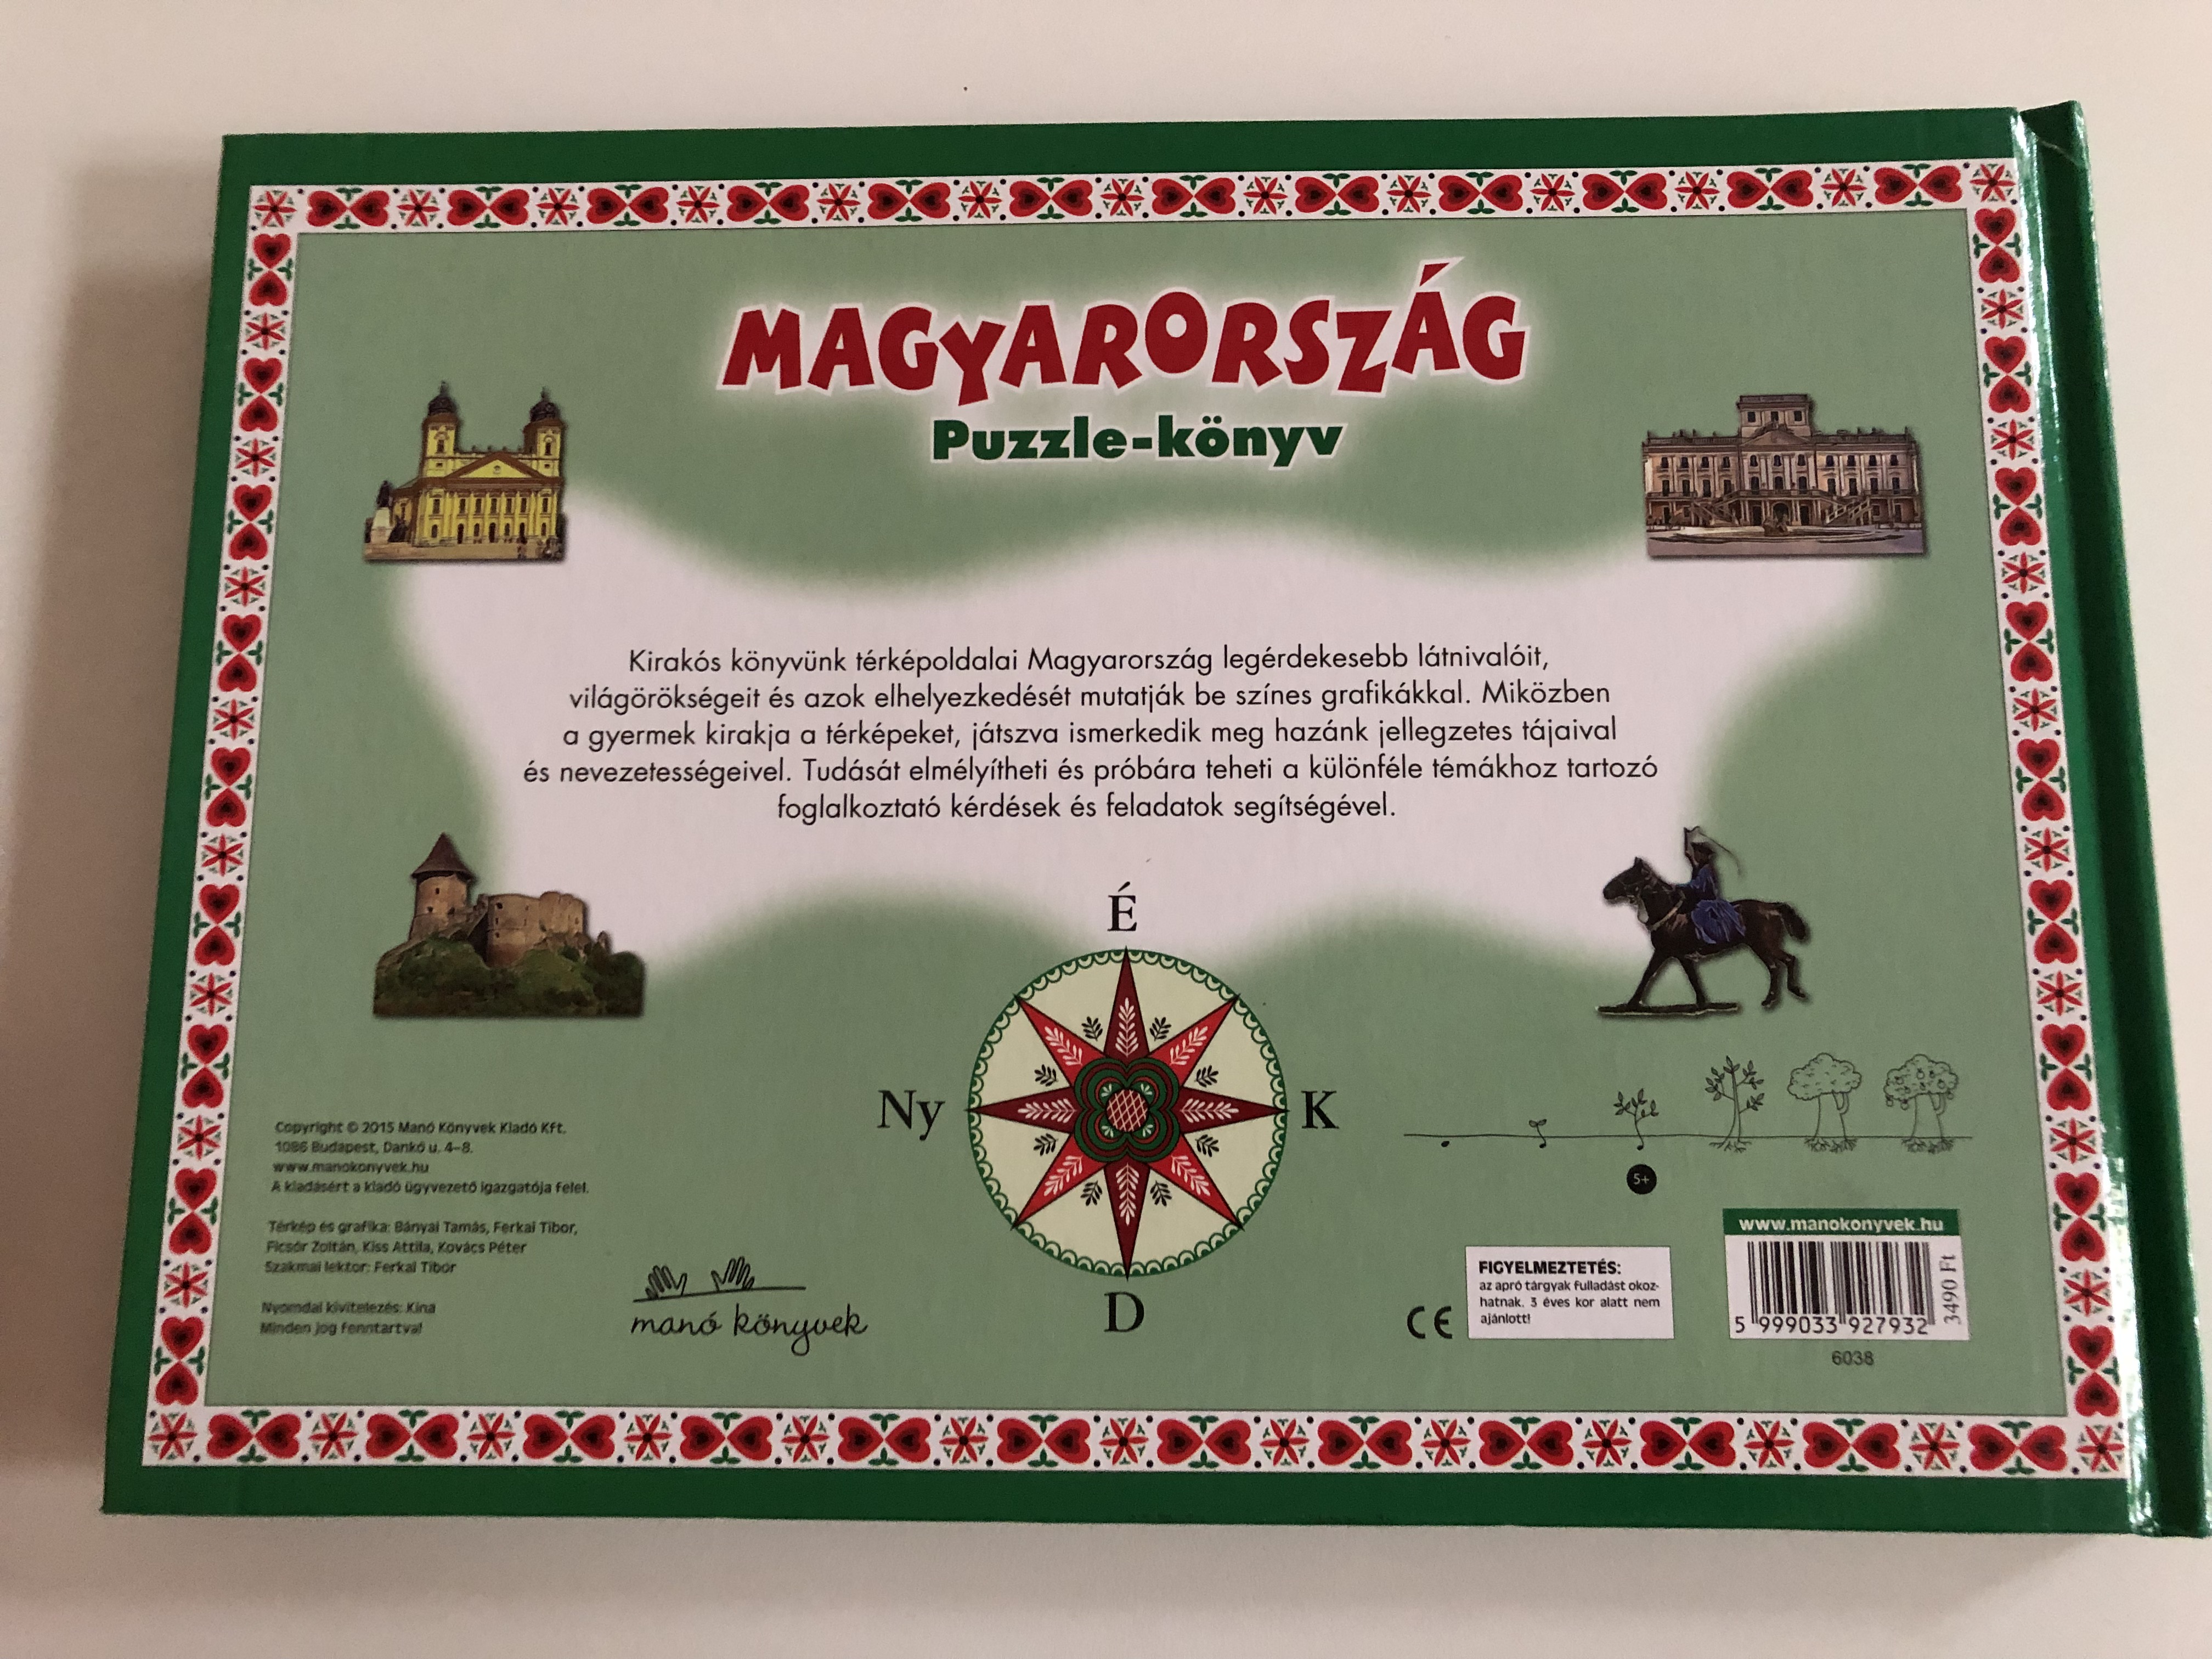 Go out Pat Civilize Magyarország Puzzle-könyv / Hungary puzzle book / 5 térkép - 48 darabos  kirakóval / 5 maps with 48 pcs puzzle per map / Manó könyvek 2015 /  Hardcover - bibleinmylanguage